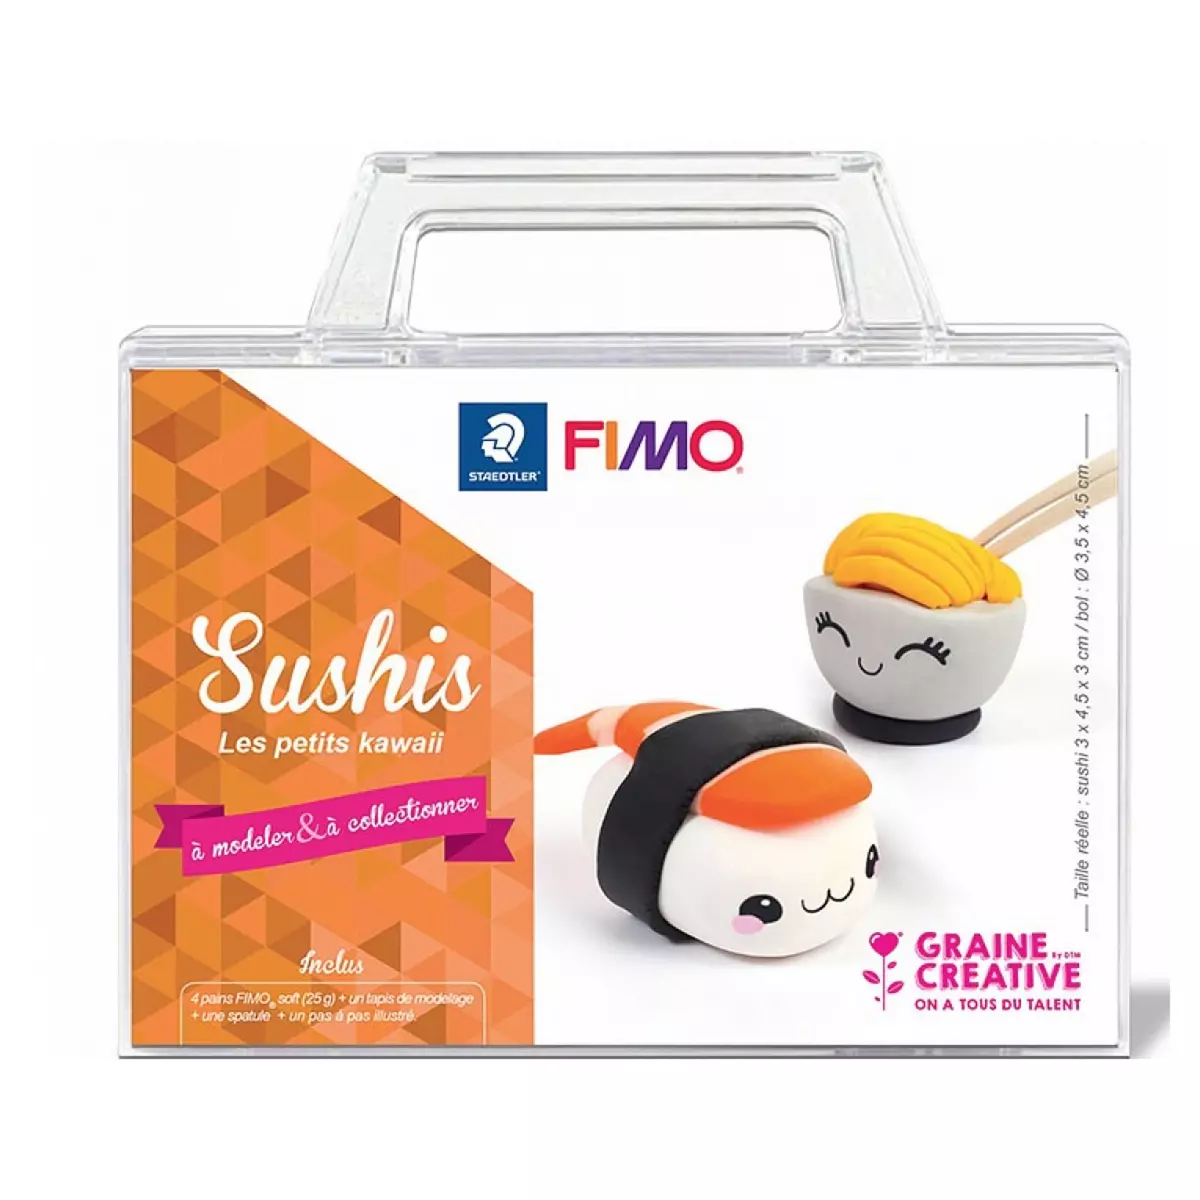 Graine créative it Figurine Fimo Kawaii Sushi